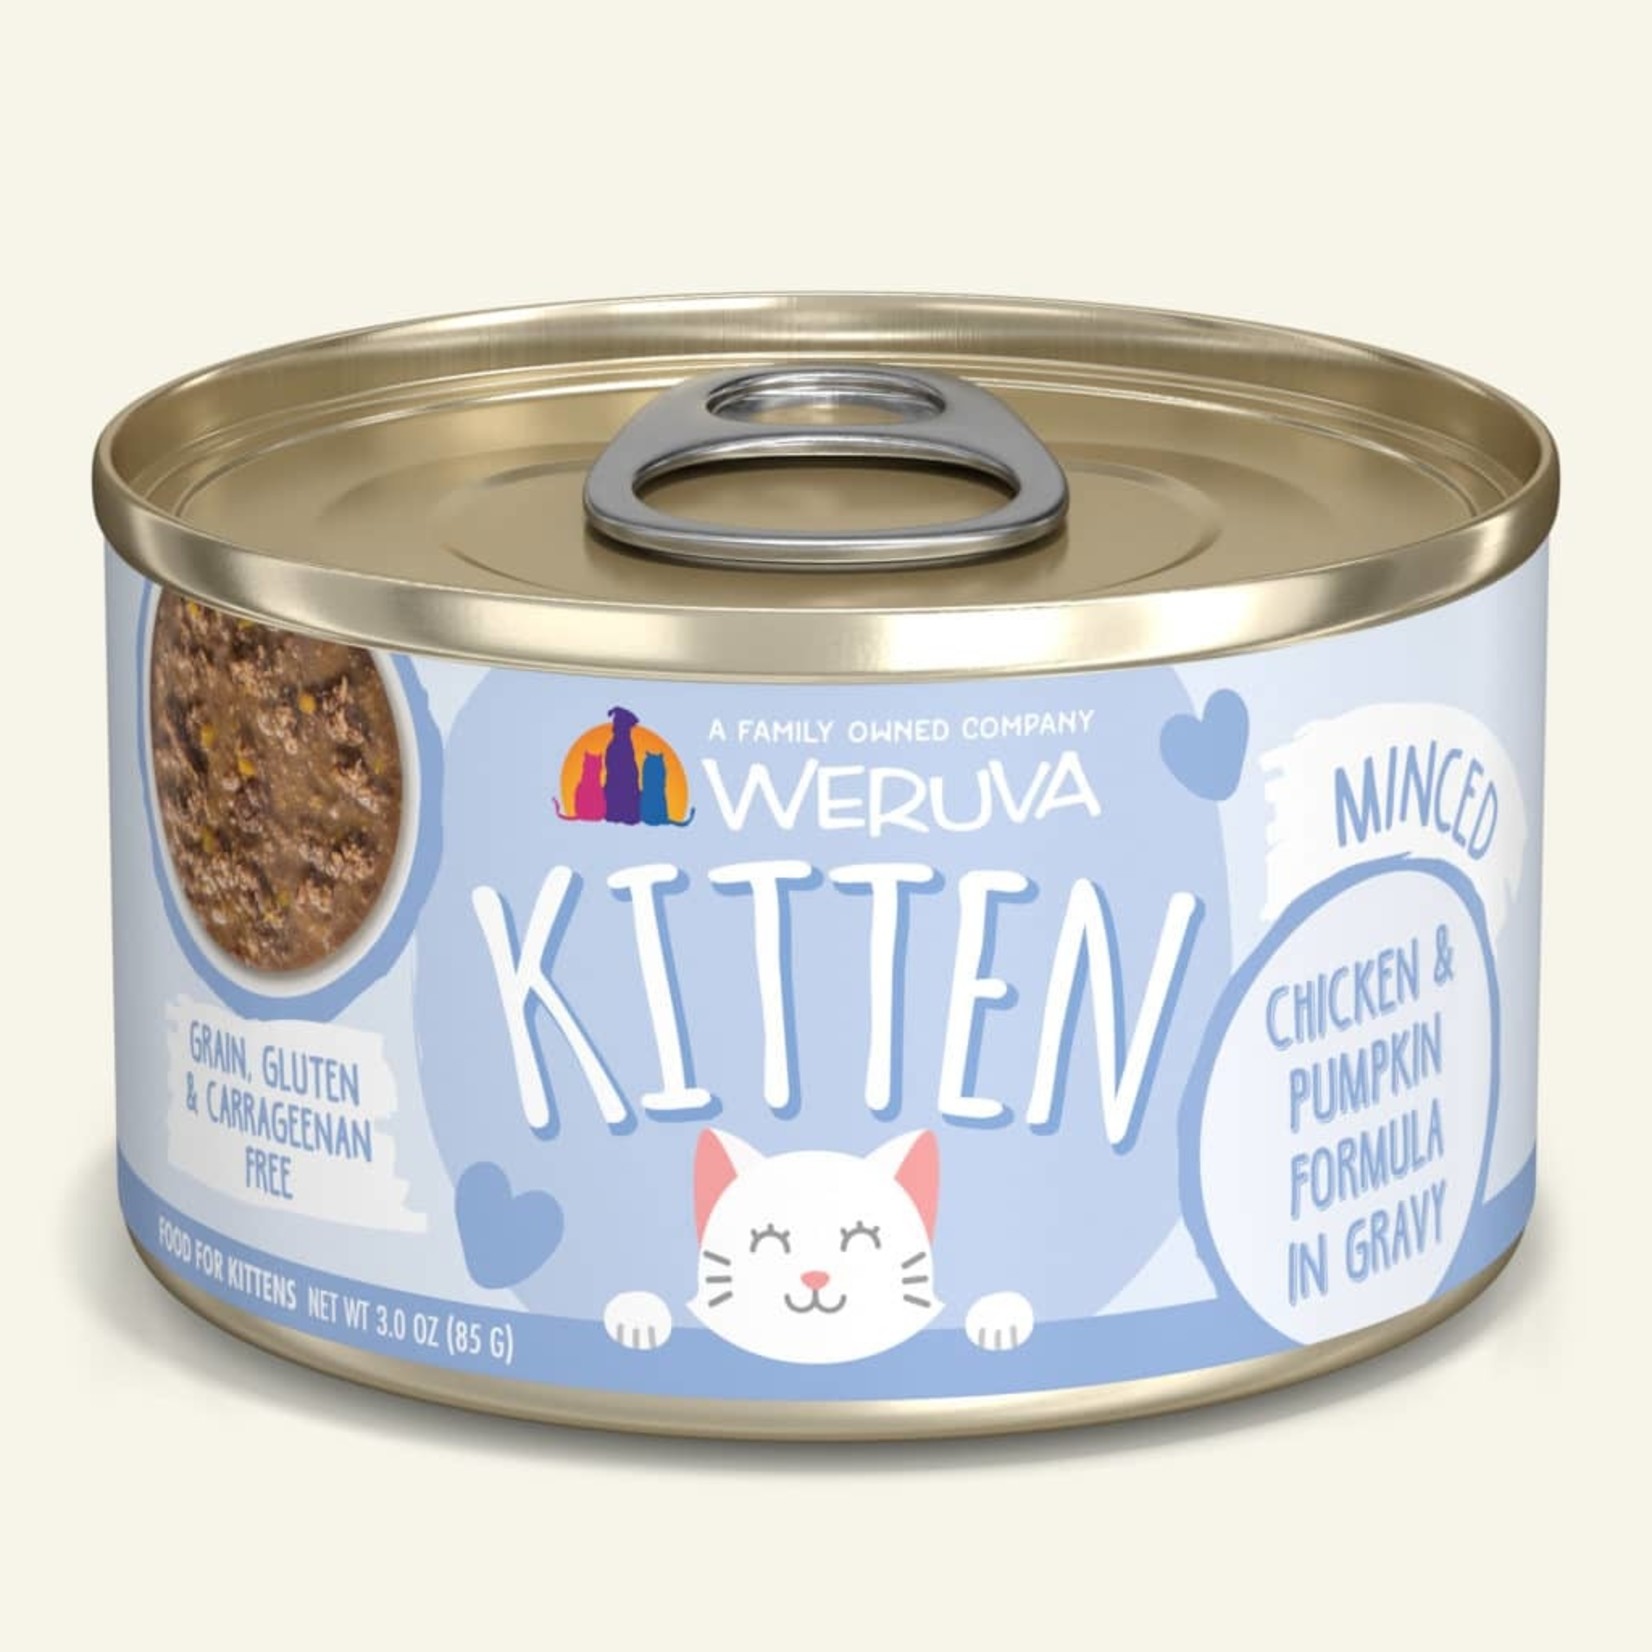 Weruva Weruva Kitten Wet Cat Food Chicken and Pumpkin Formula in Gravy 3.0oz Can Grain Free